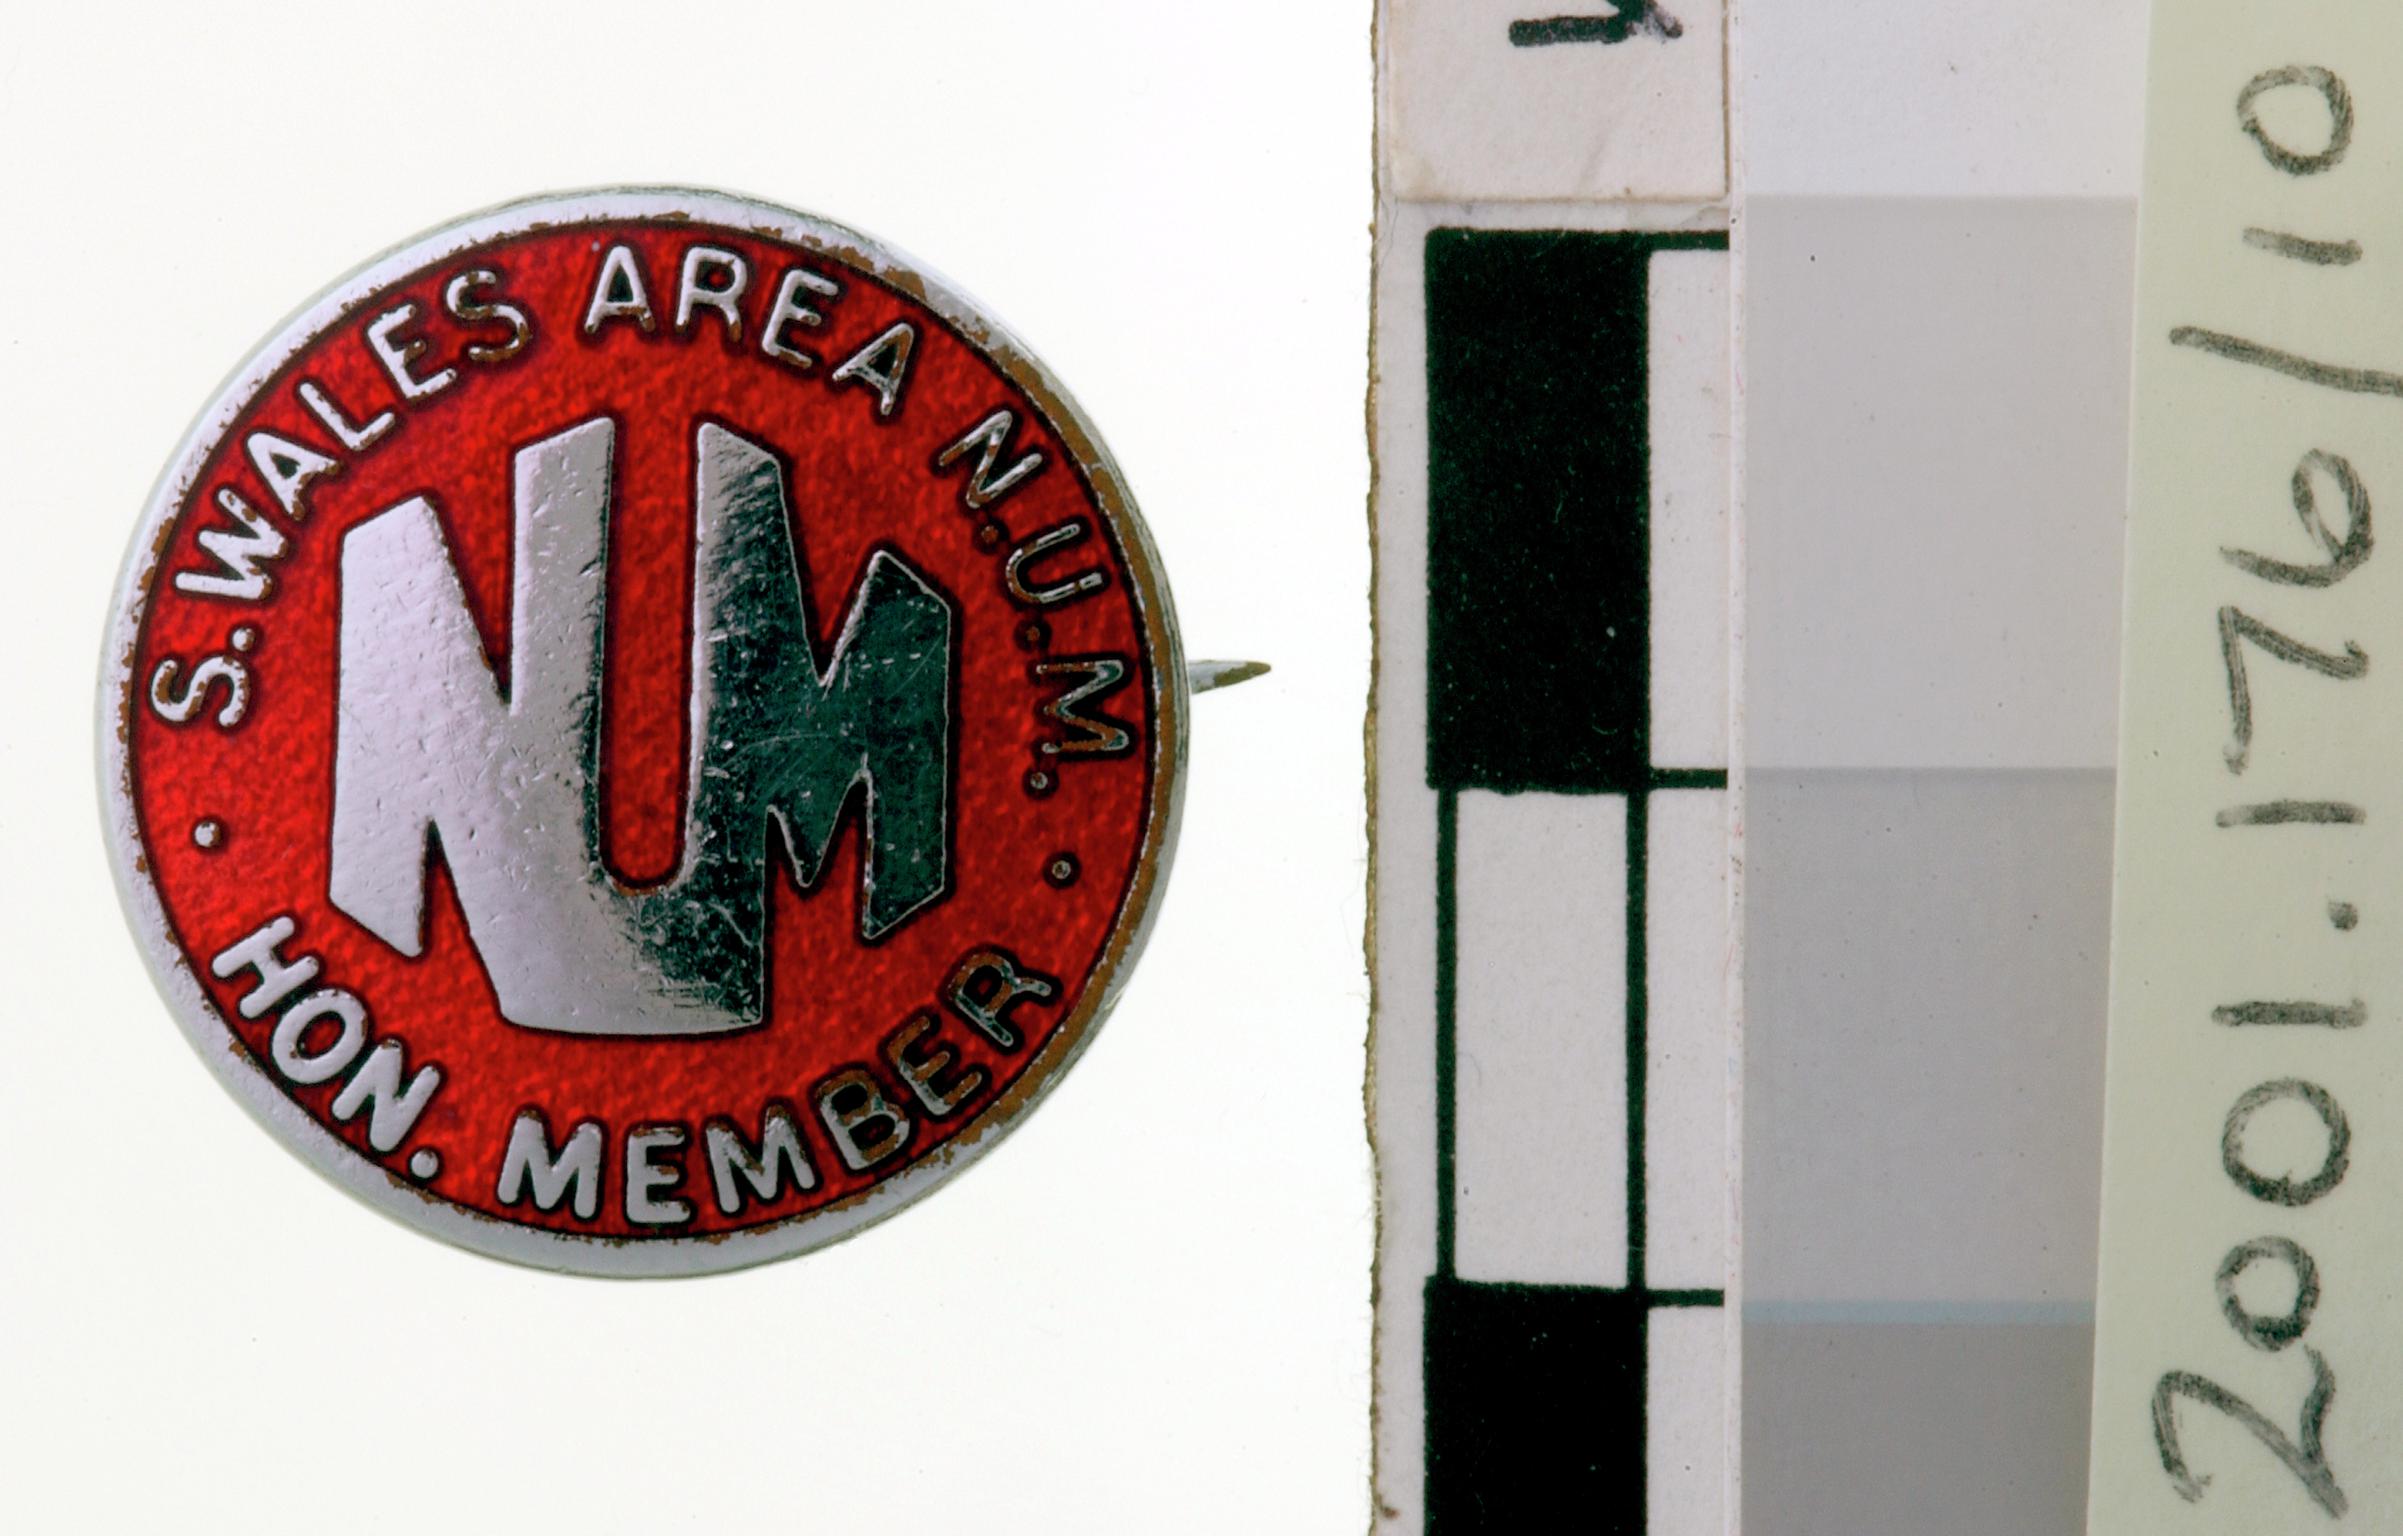 N.U.M. South Wales Area, badge